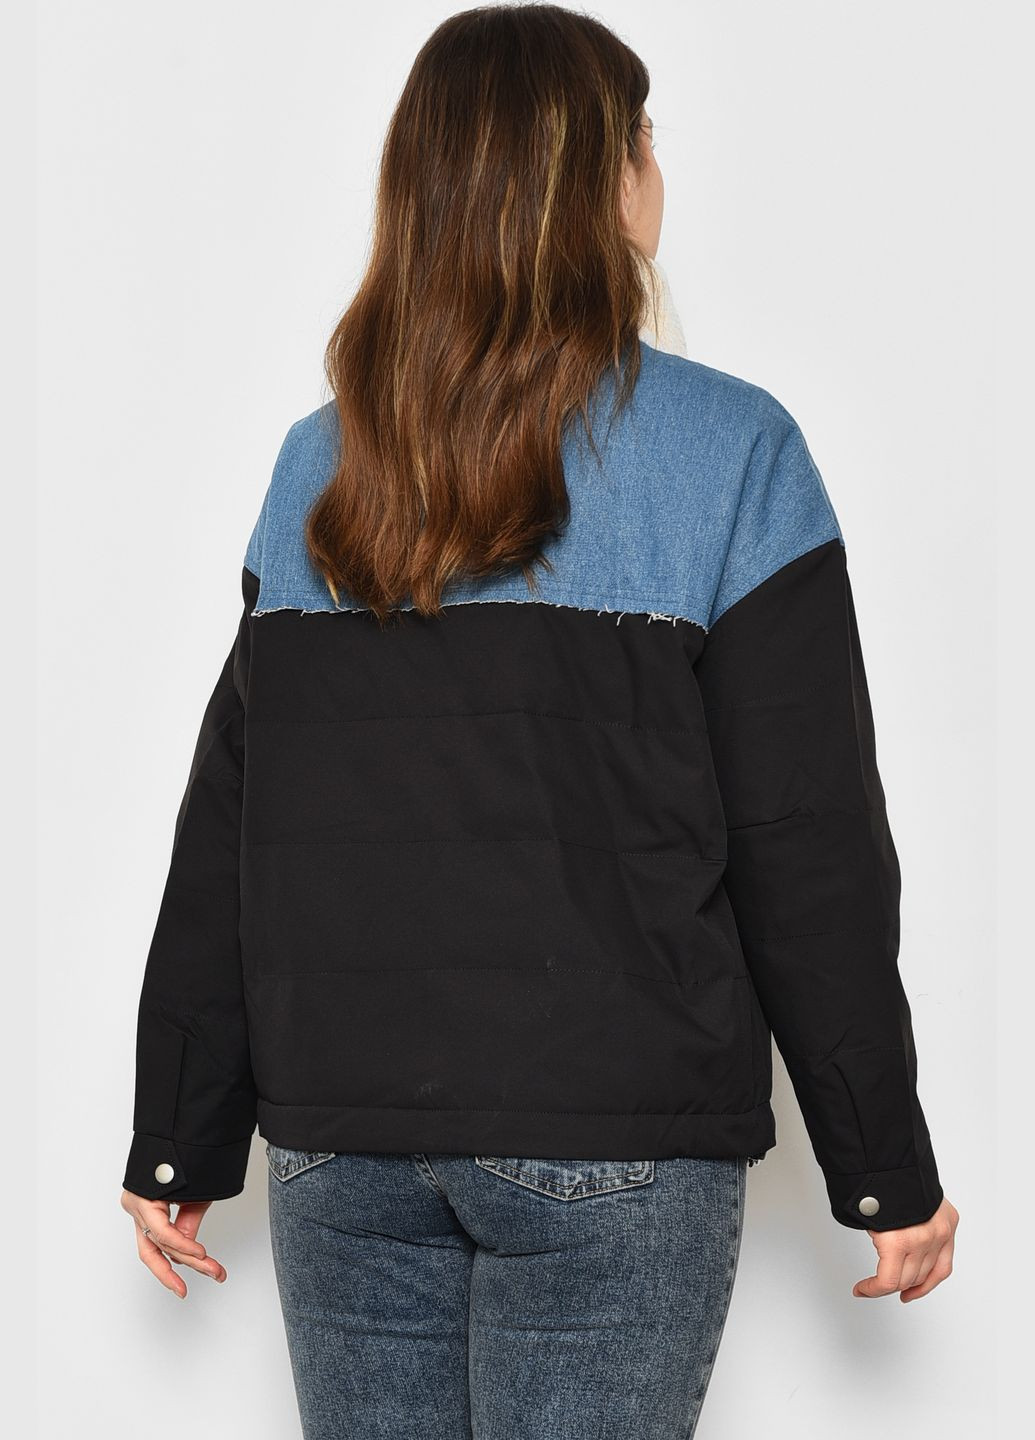 Черная демисезонная куртка женская демисезонная черно-голубого цвета Let's Shop